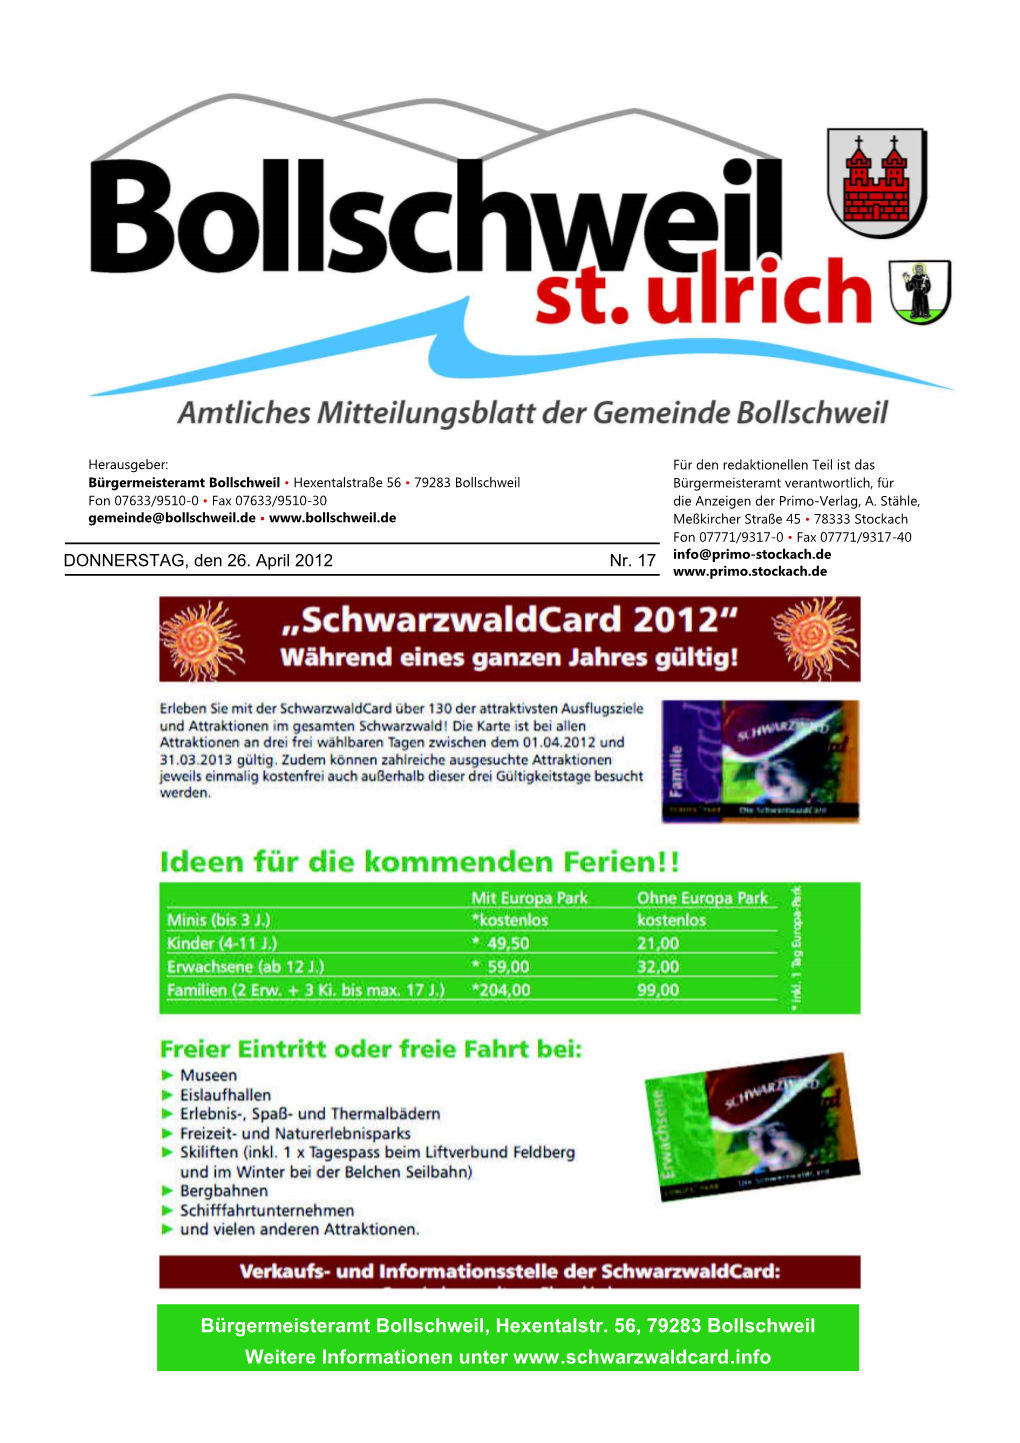 Bürgermeisteramt Bollschweil, Hexentalstr. 56, 79283 Bollschweil